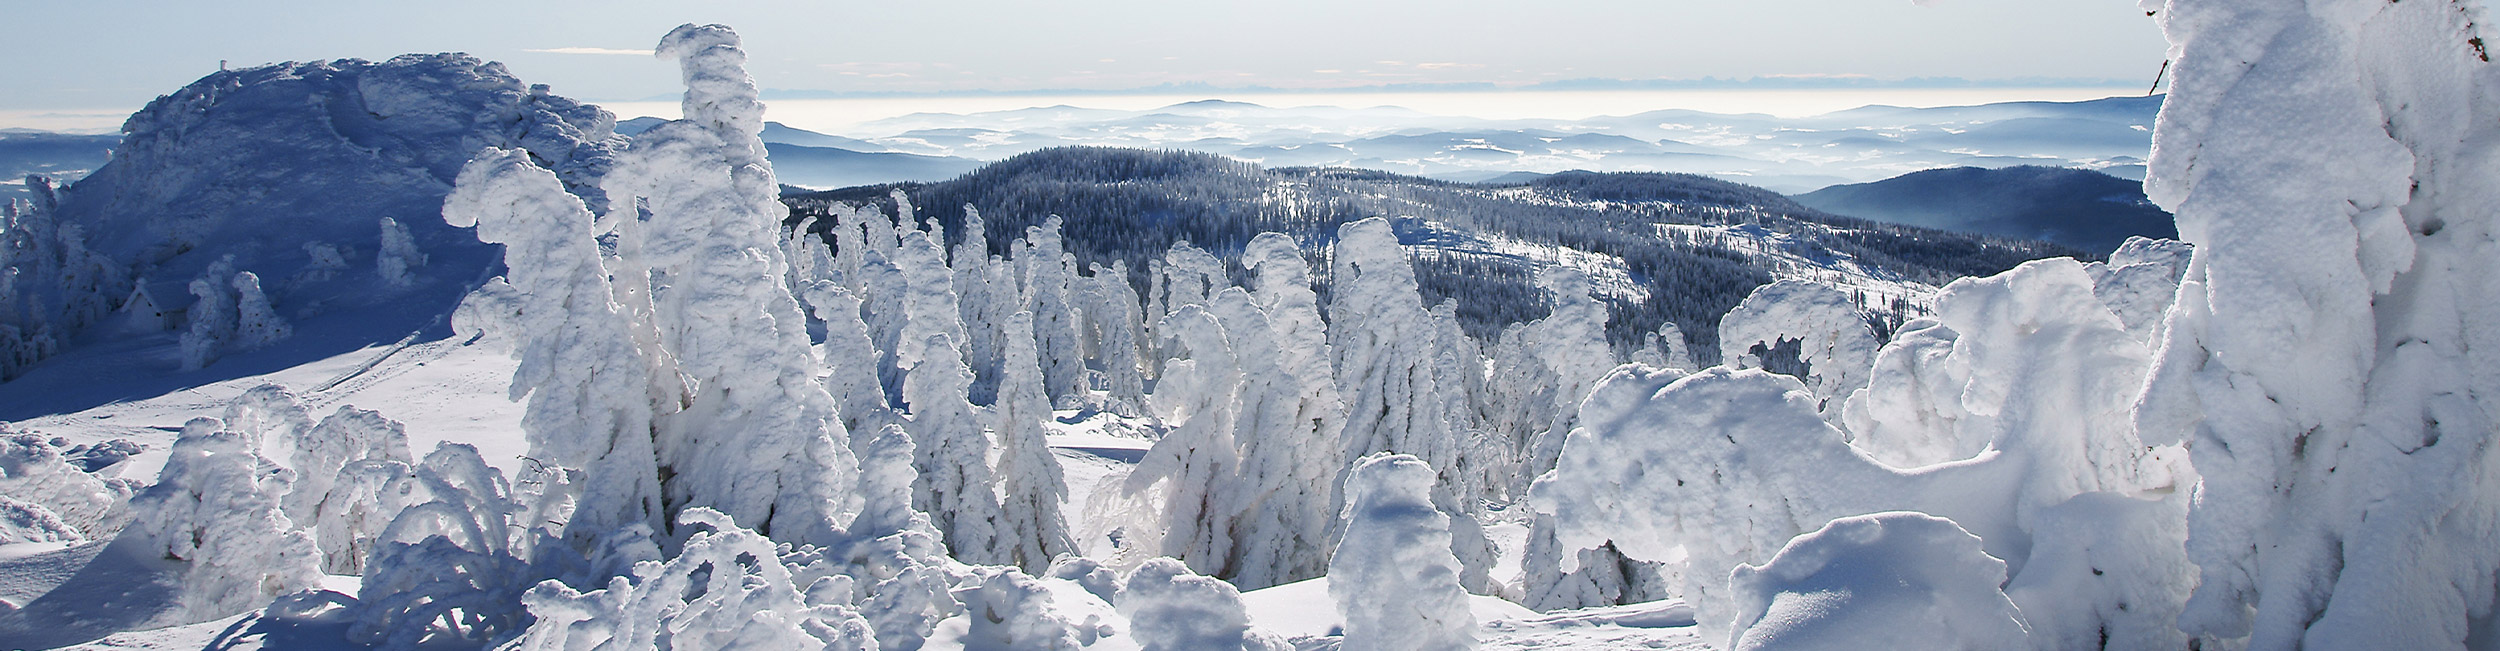 Wintersport genießen im Bayerischen Wald, Wellnesshotel Jagdhof